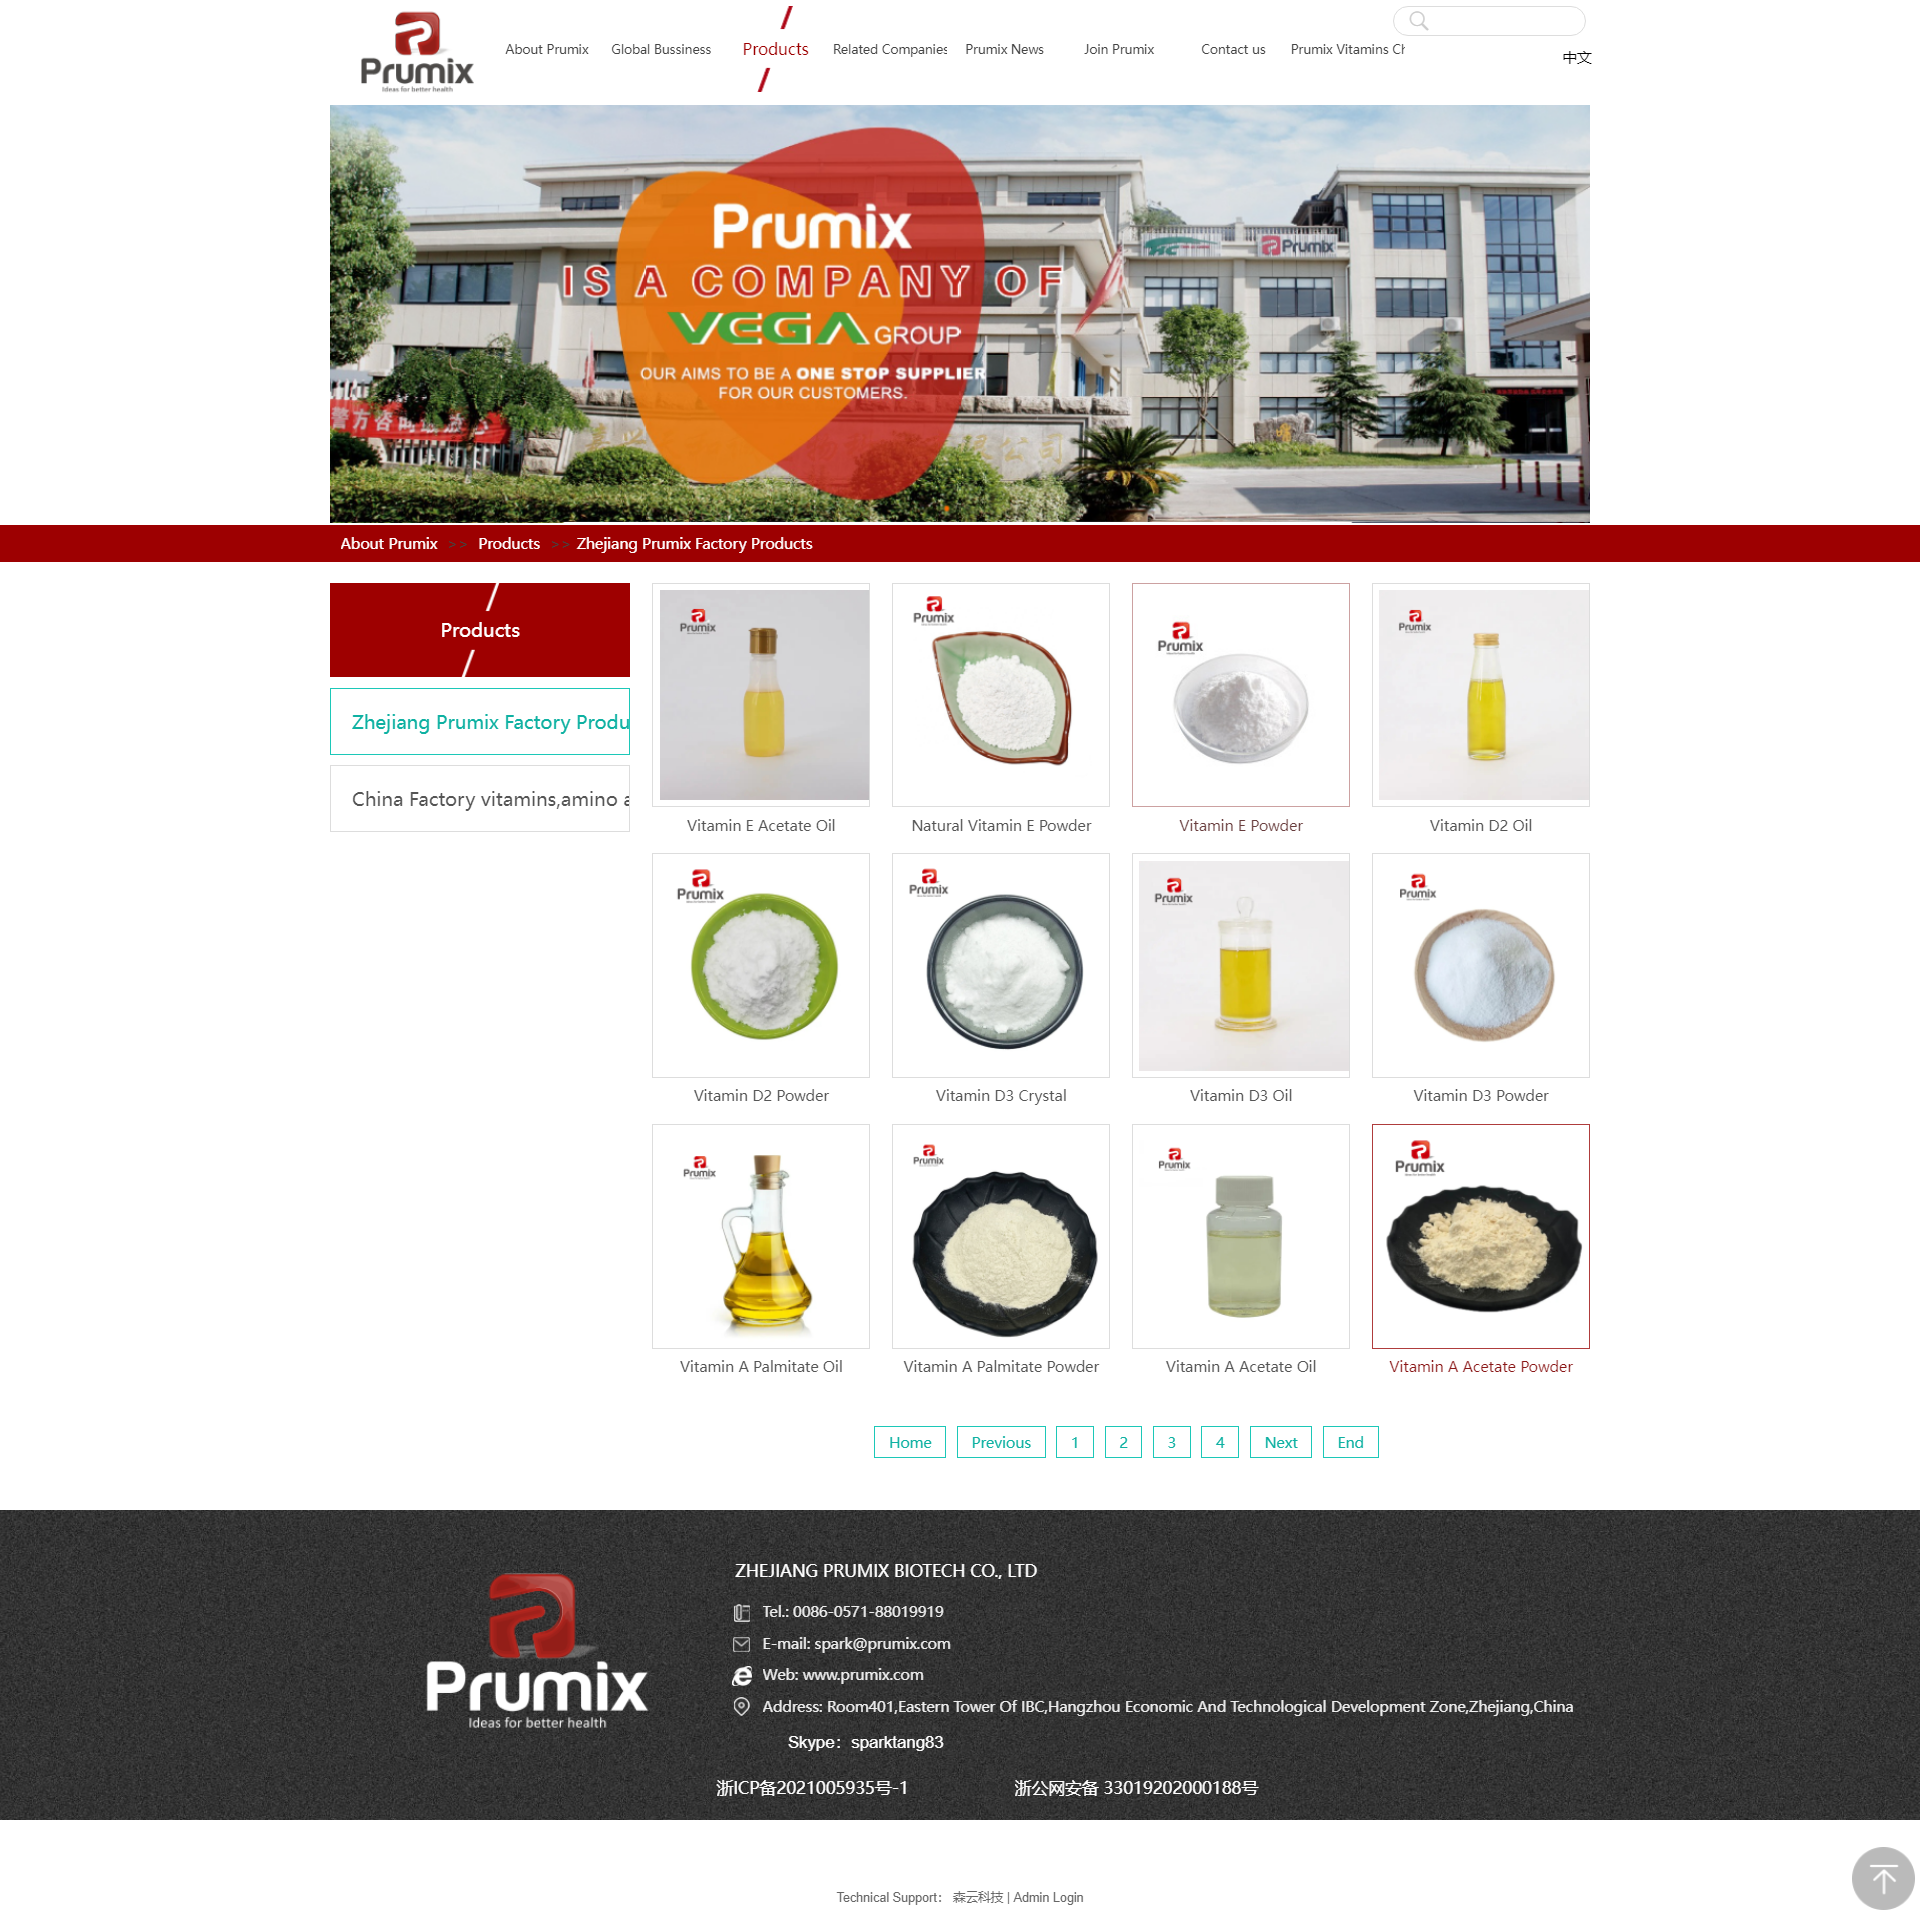 prumix VE oil,VE powder.png